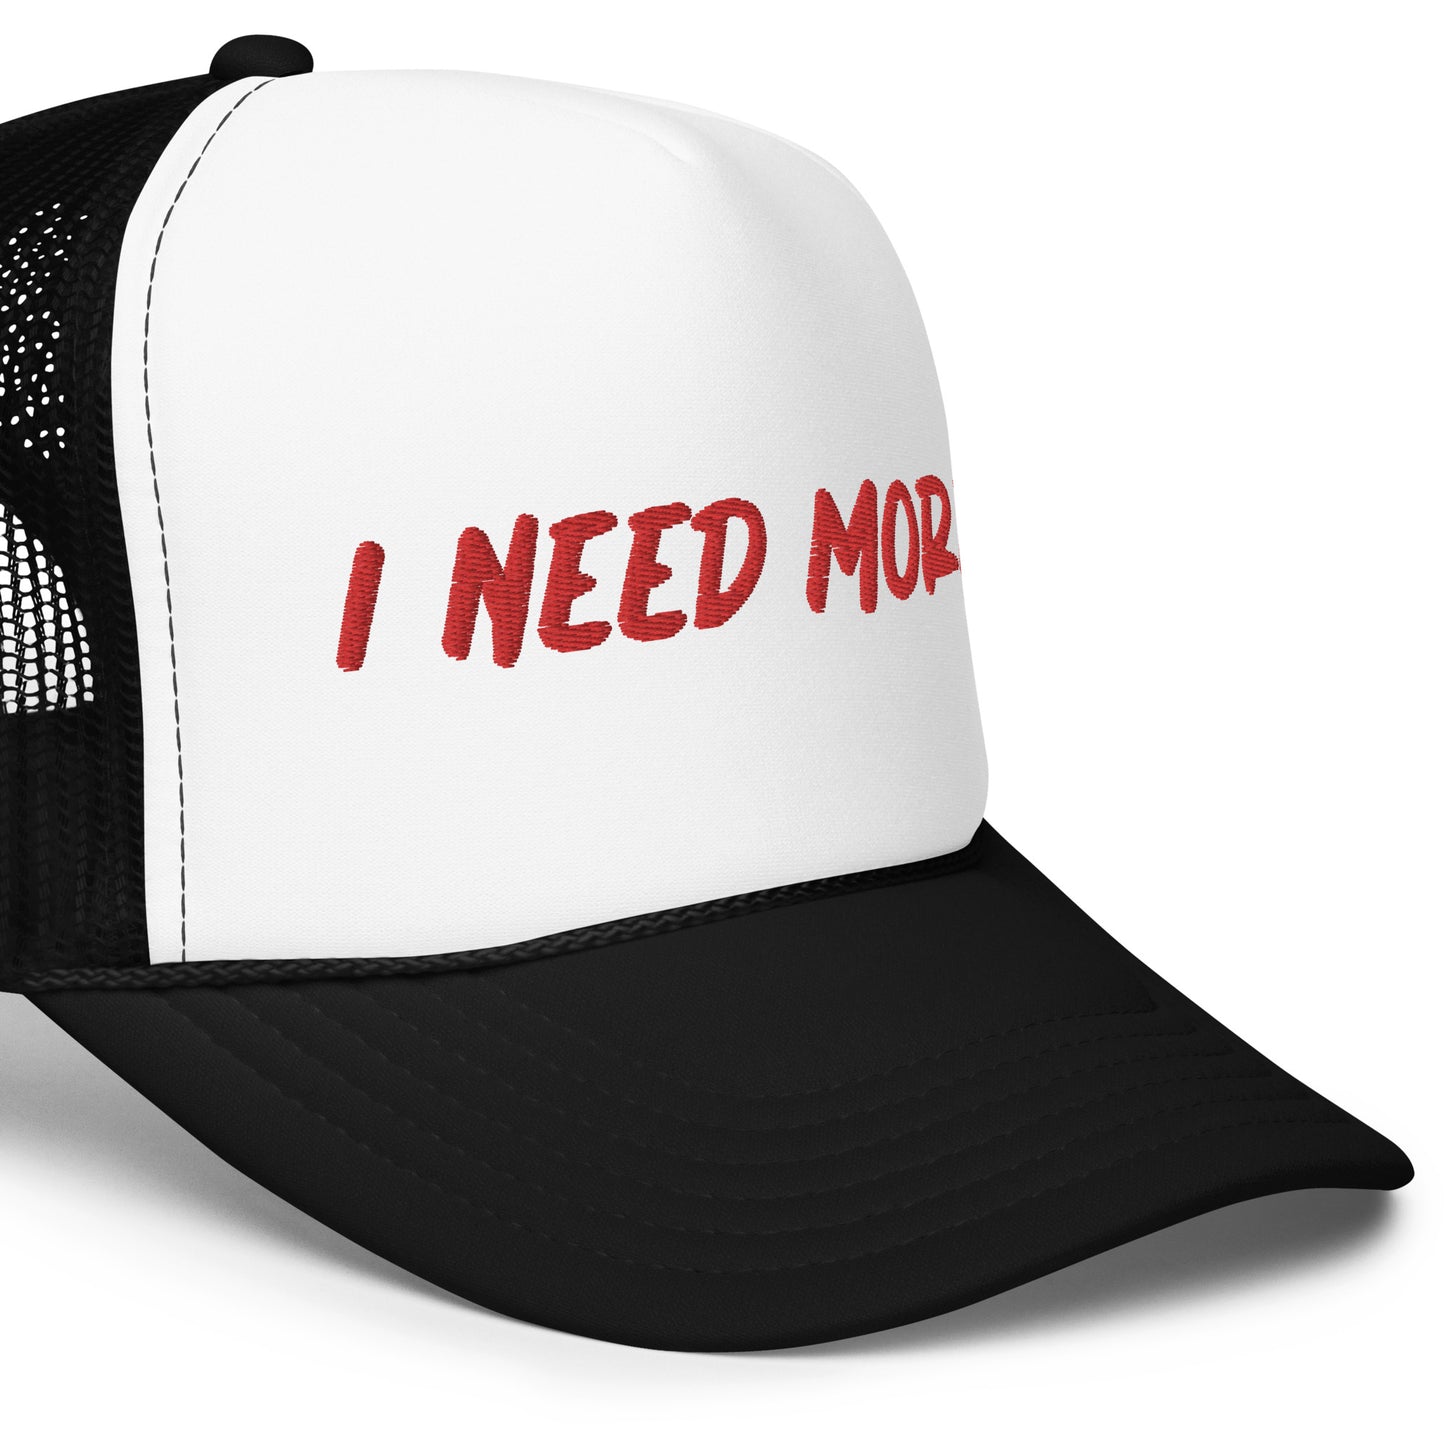 "I NEED MORE" Foam Trucker Hat